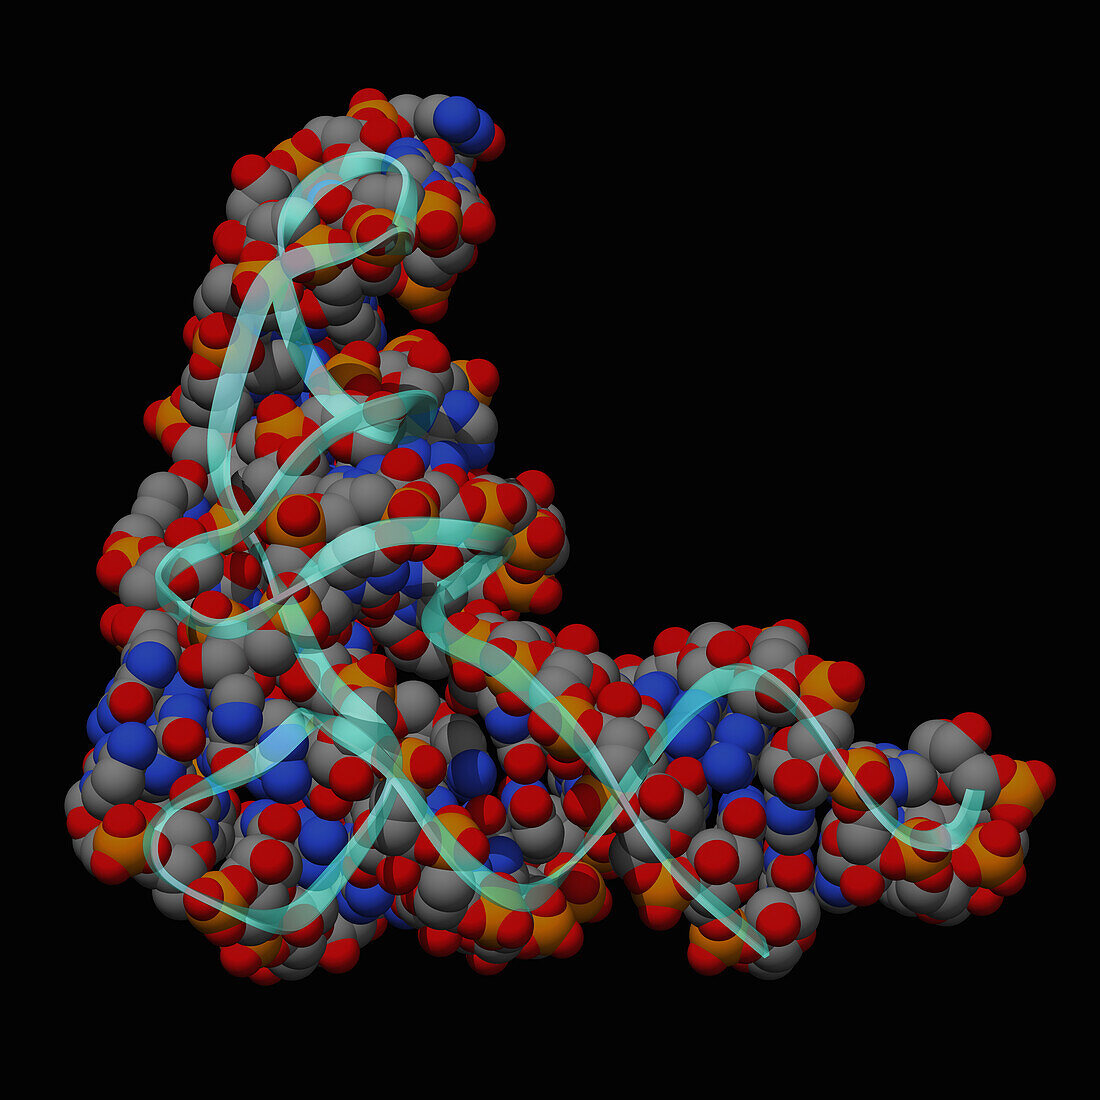 Human transfer RNA, molecular model